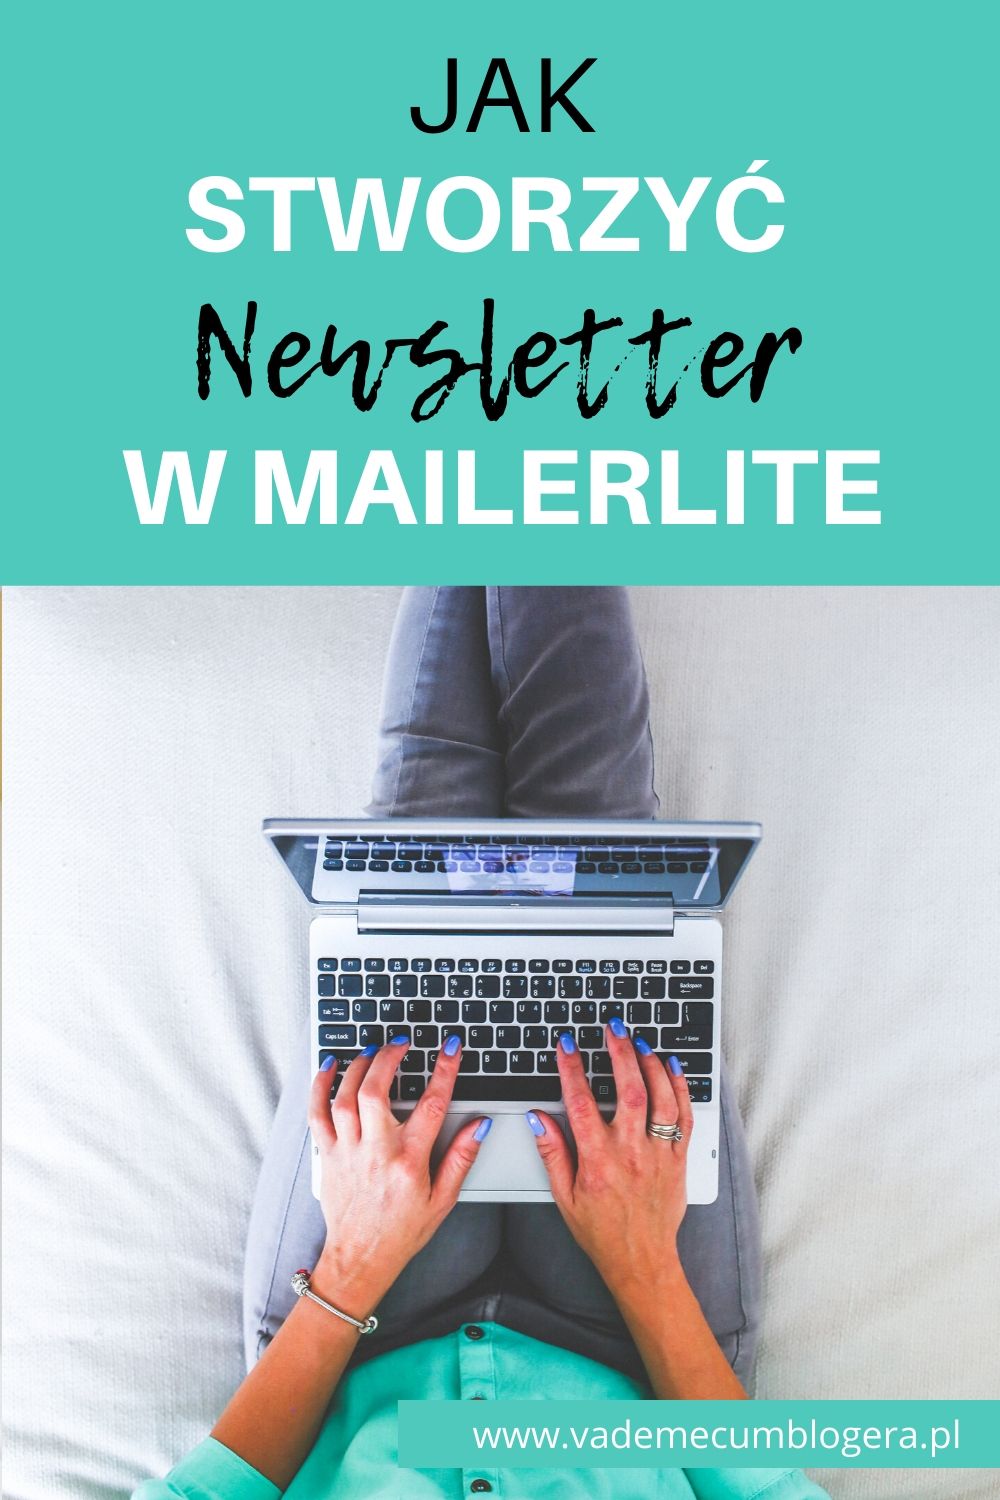 Jak Stworzyć Newsletter W Mailerlite Odc2? Jak stworzyć i osadzić na stronie formularz zapisu na newsletter przy użyciu MailerLite.